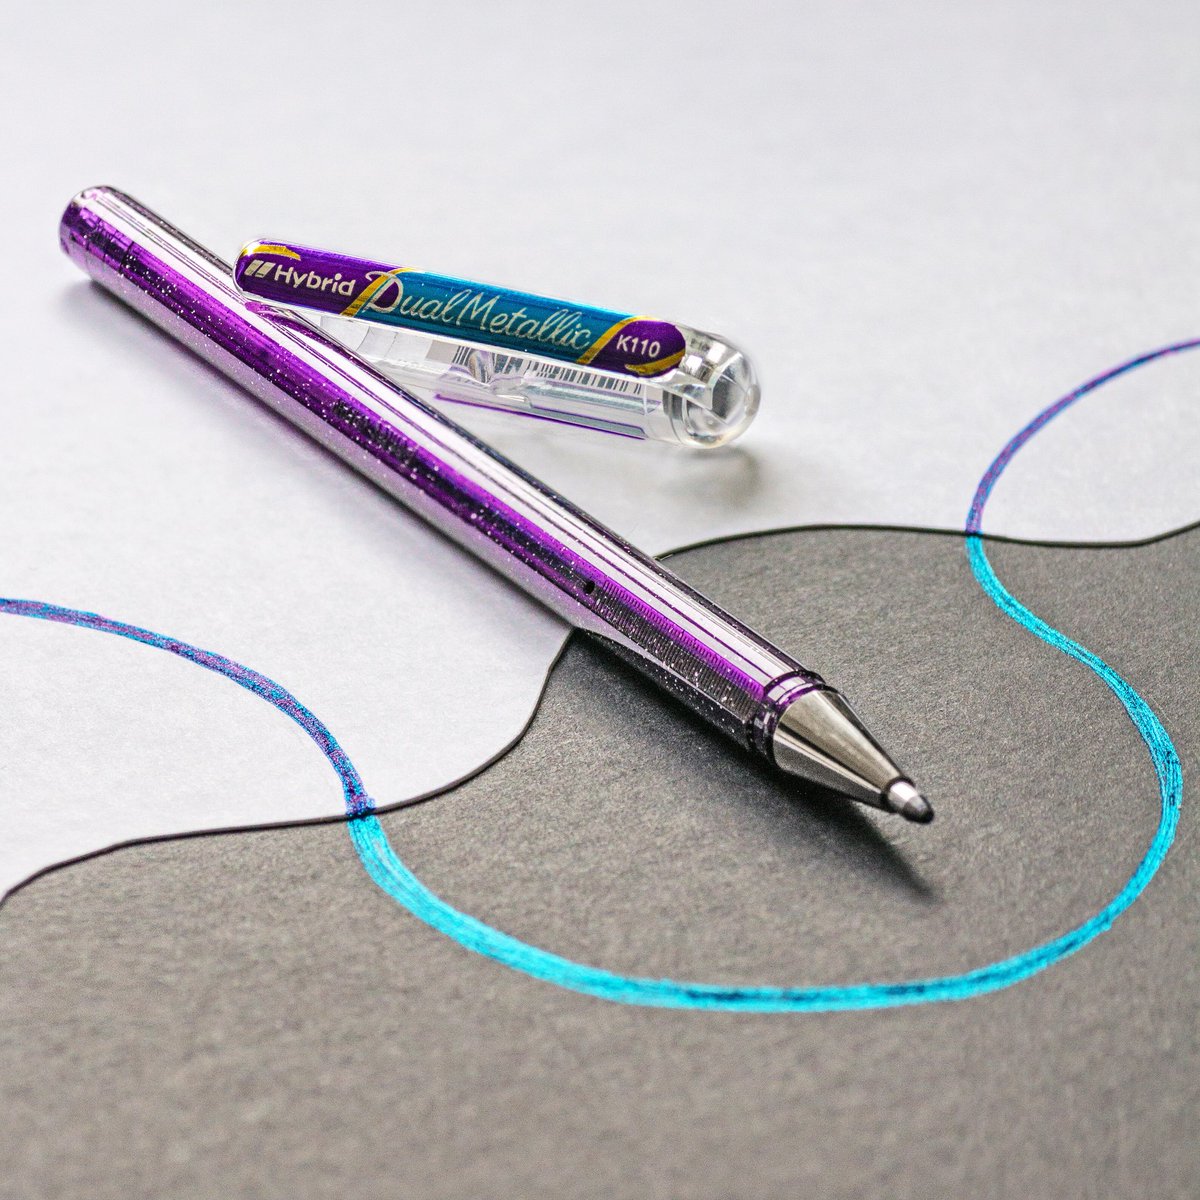 Pentel Hybrid Dual Metallic Pen. hybrid dual metallic pens. 